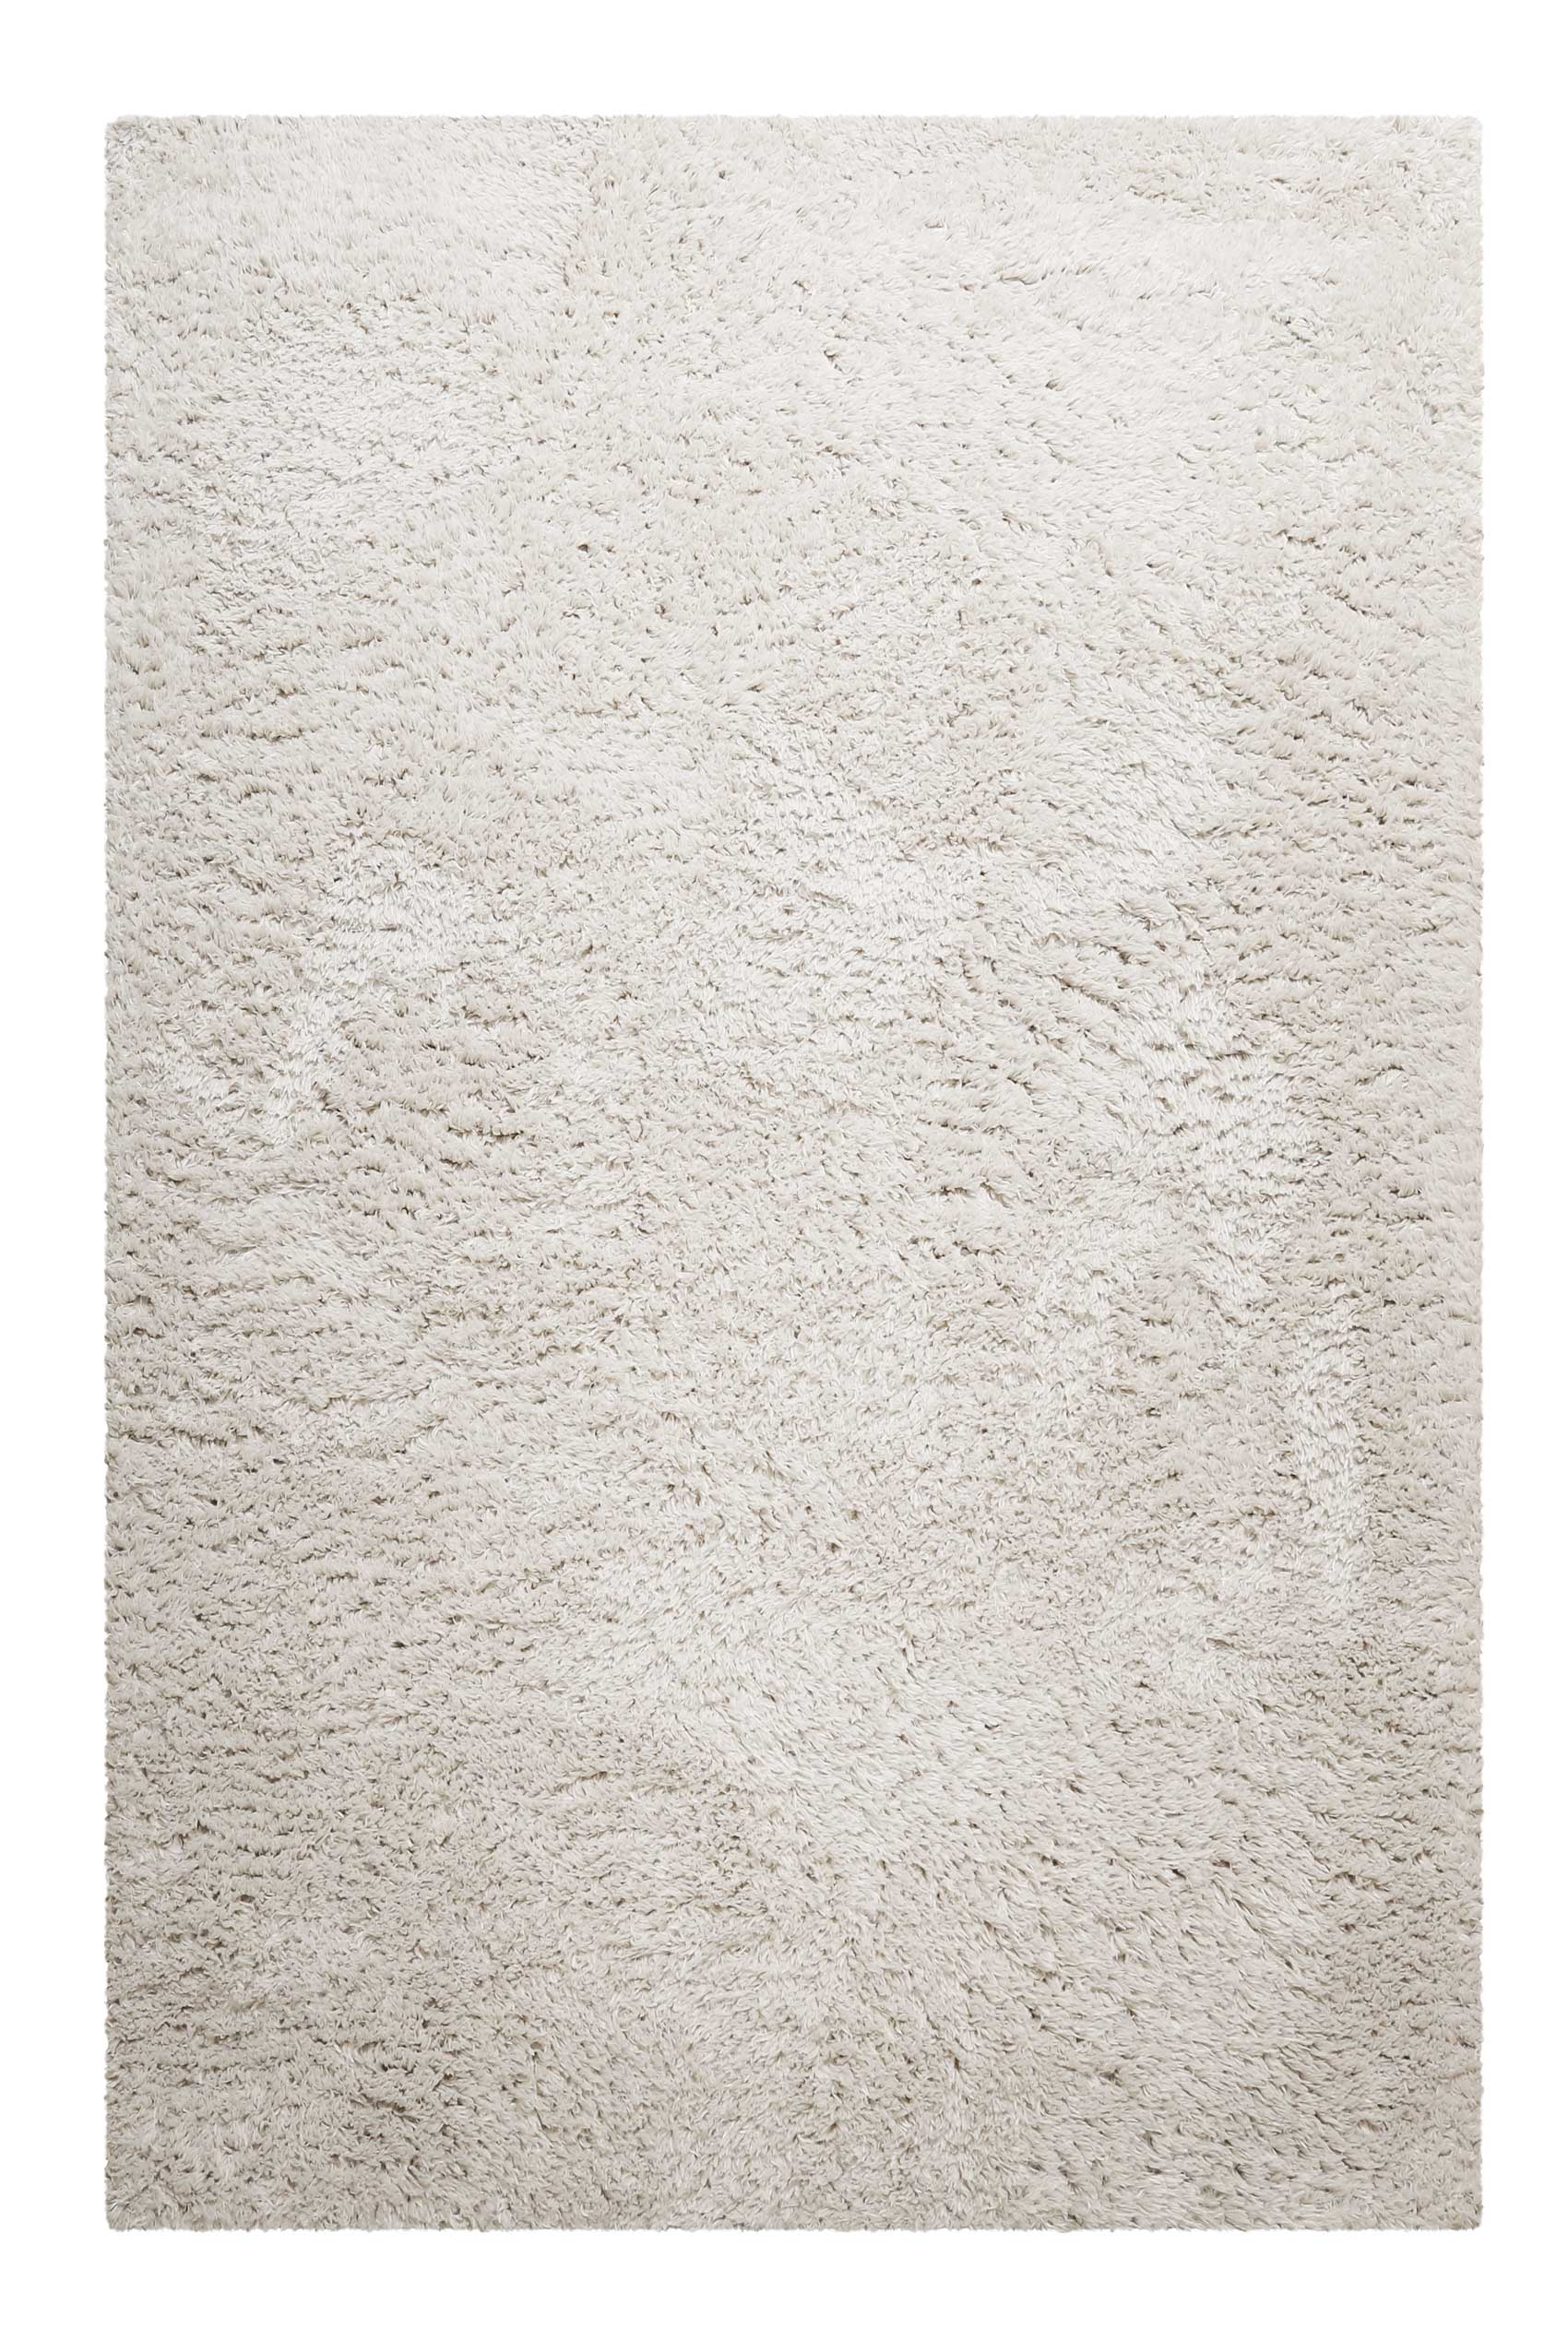 Nachhaltiger Teppich Creme Beige soft & weich » Matteo « Homie Living - Ansicht 1